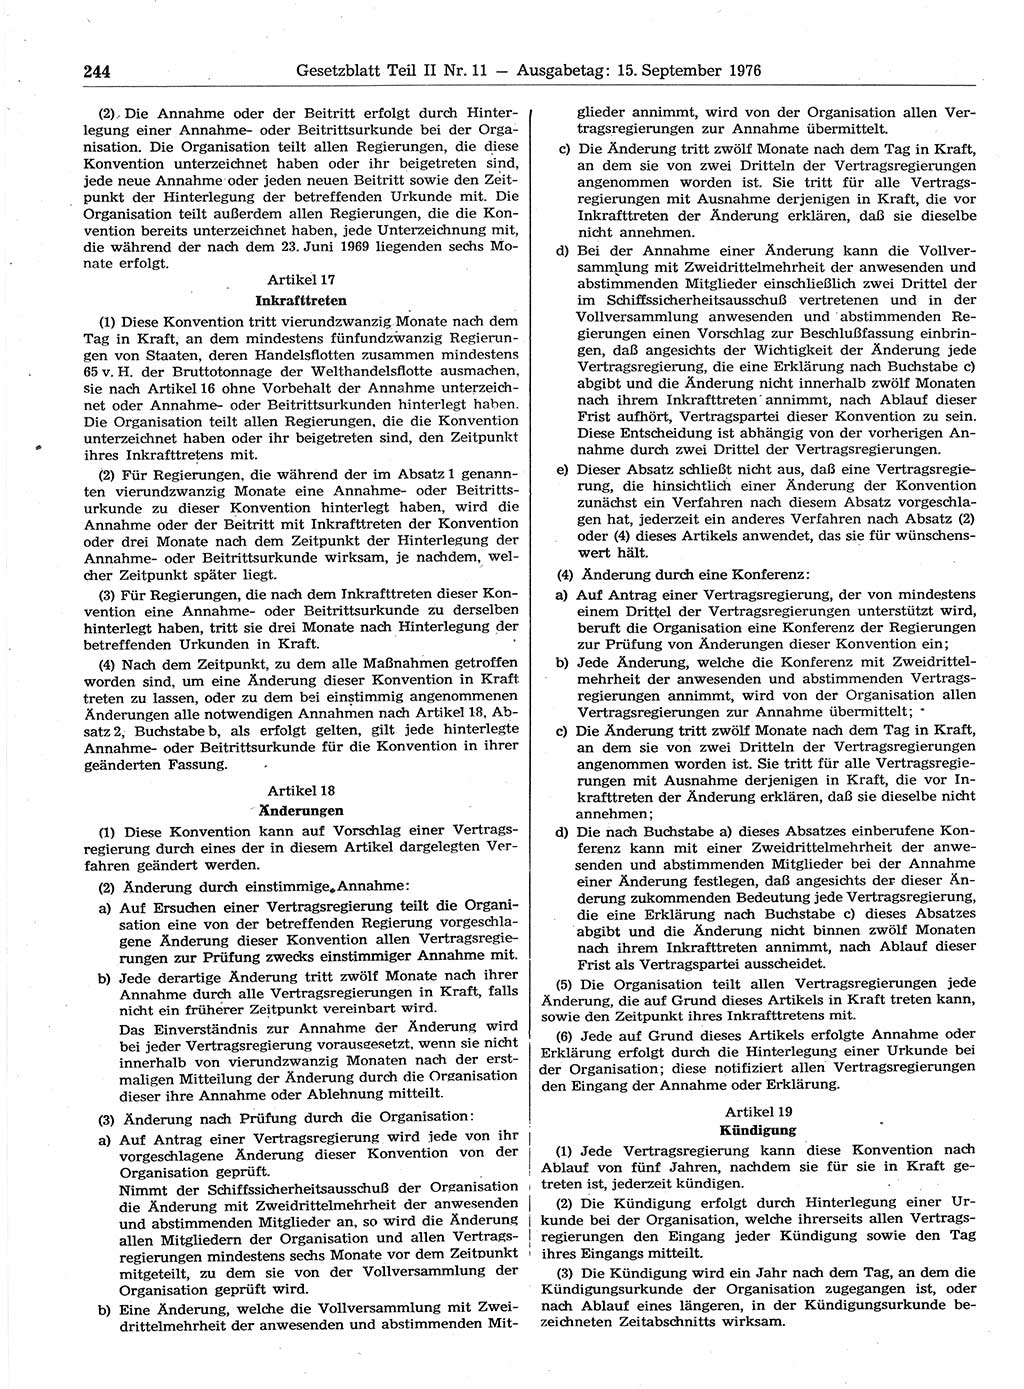 Gesetzblatt (GBl.) der Deutschen Demokratischen Republik (DDR) Teil ⅠⅠ 1976, Seite 244 (GBl. DDR ⅠⅠ 1976, S. 244)